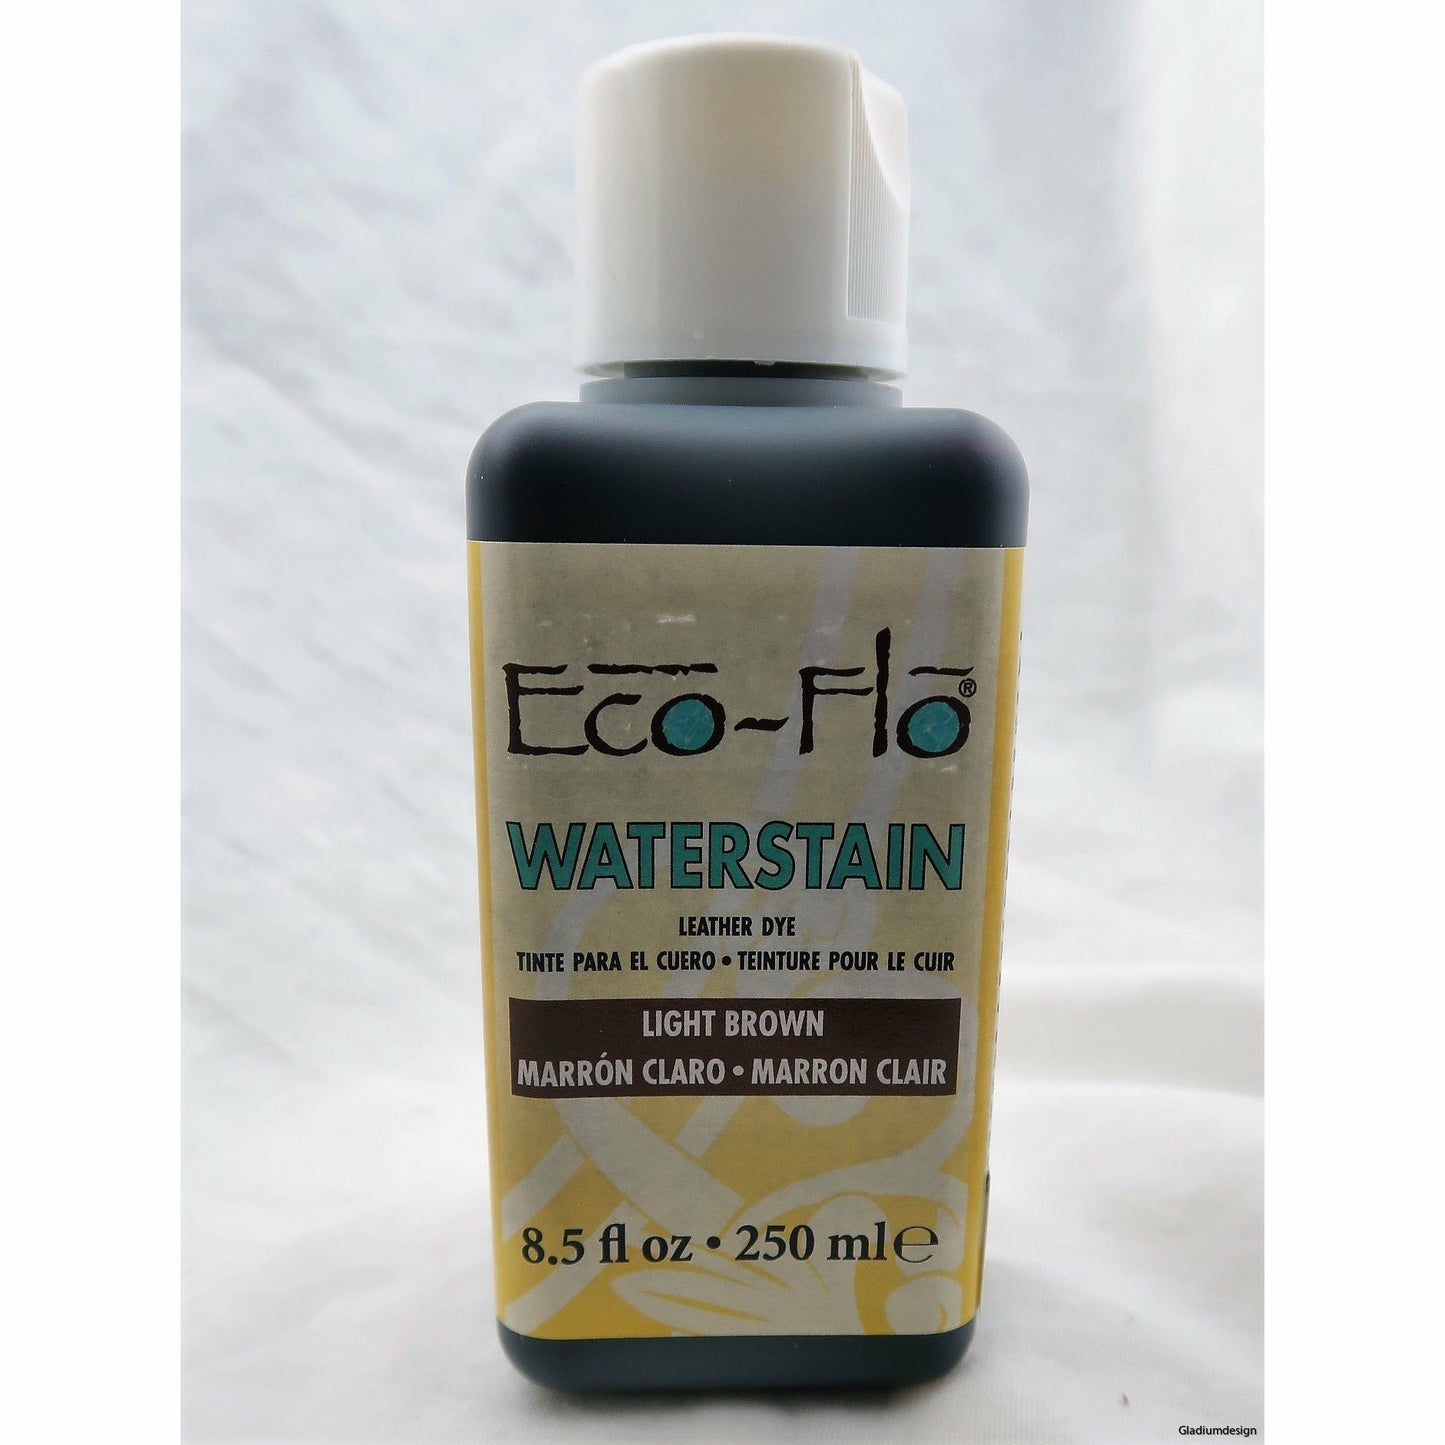 Eco-Flo Waterstain 250ml - 12 Färger